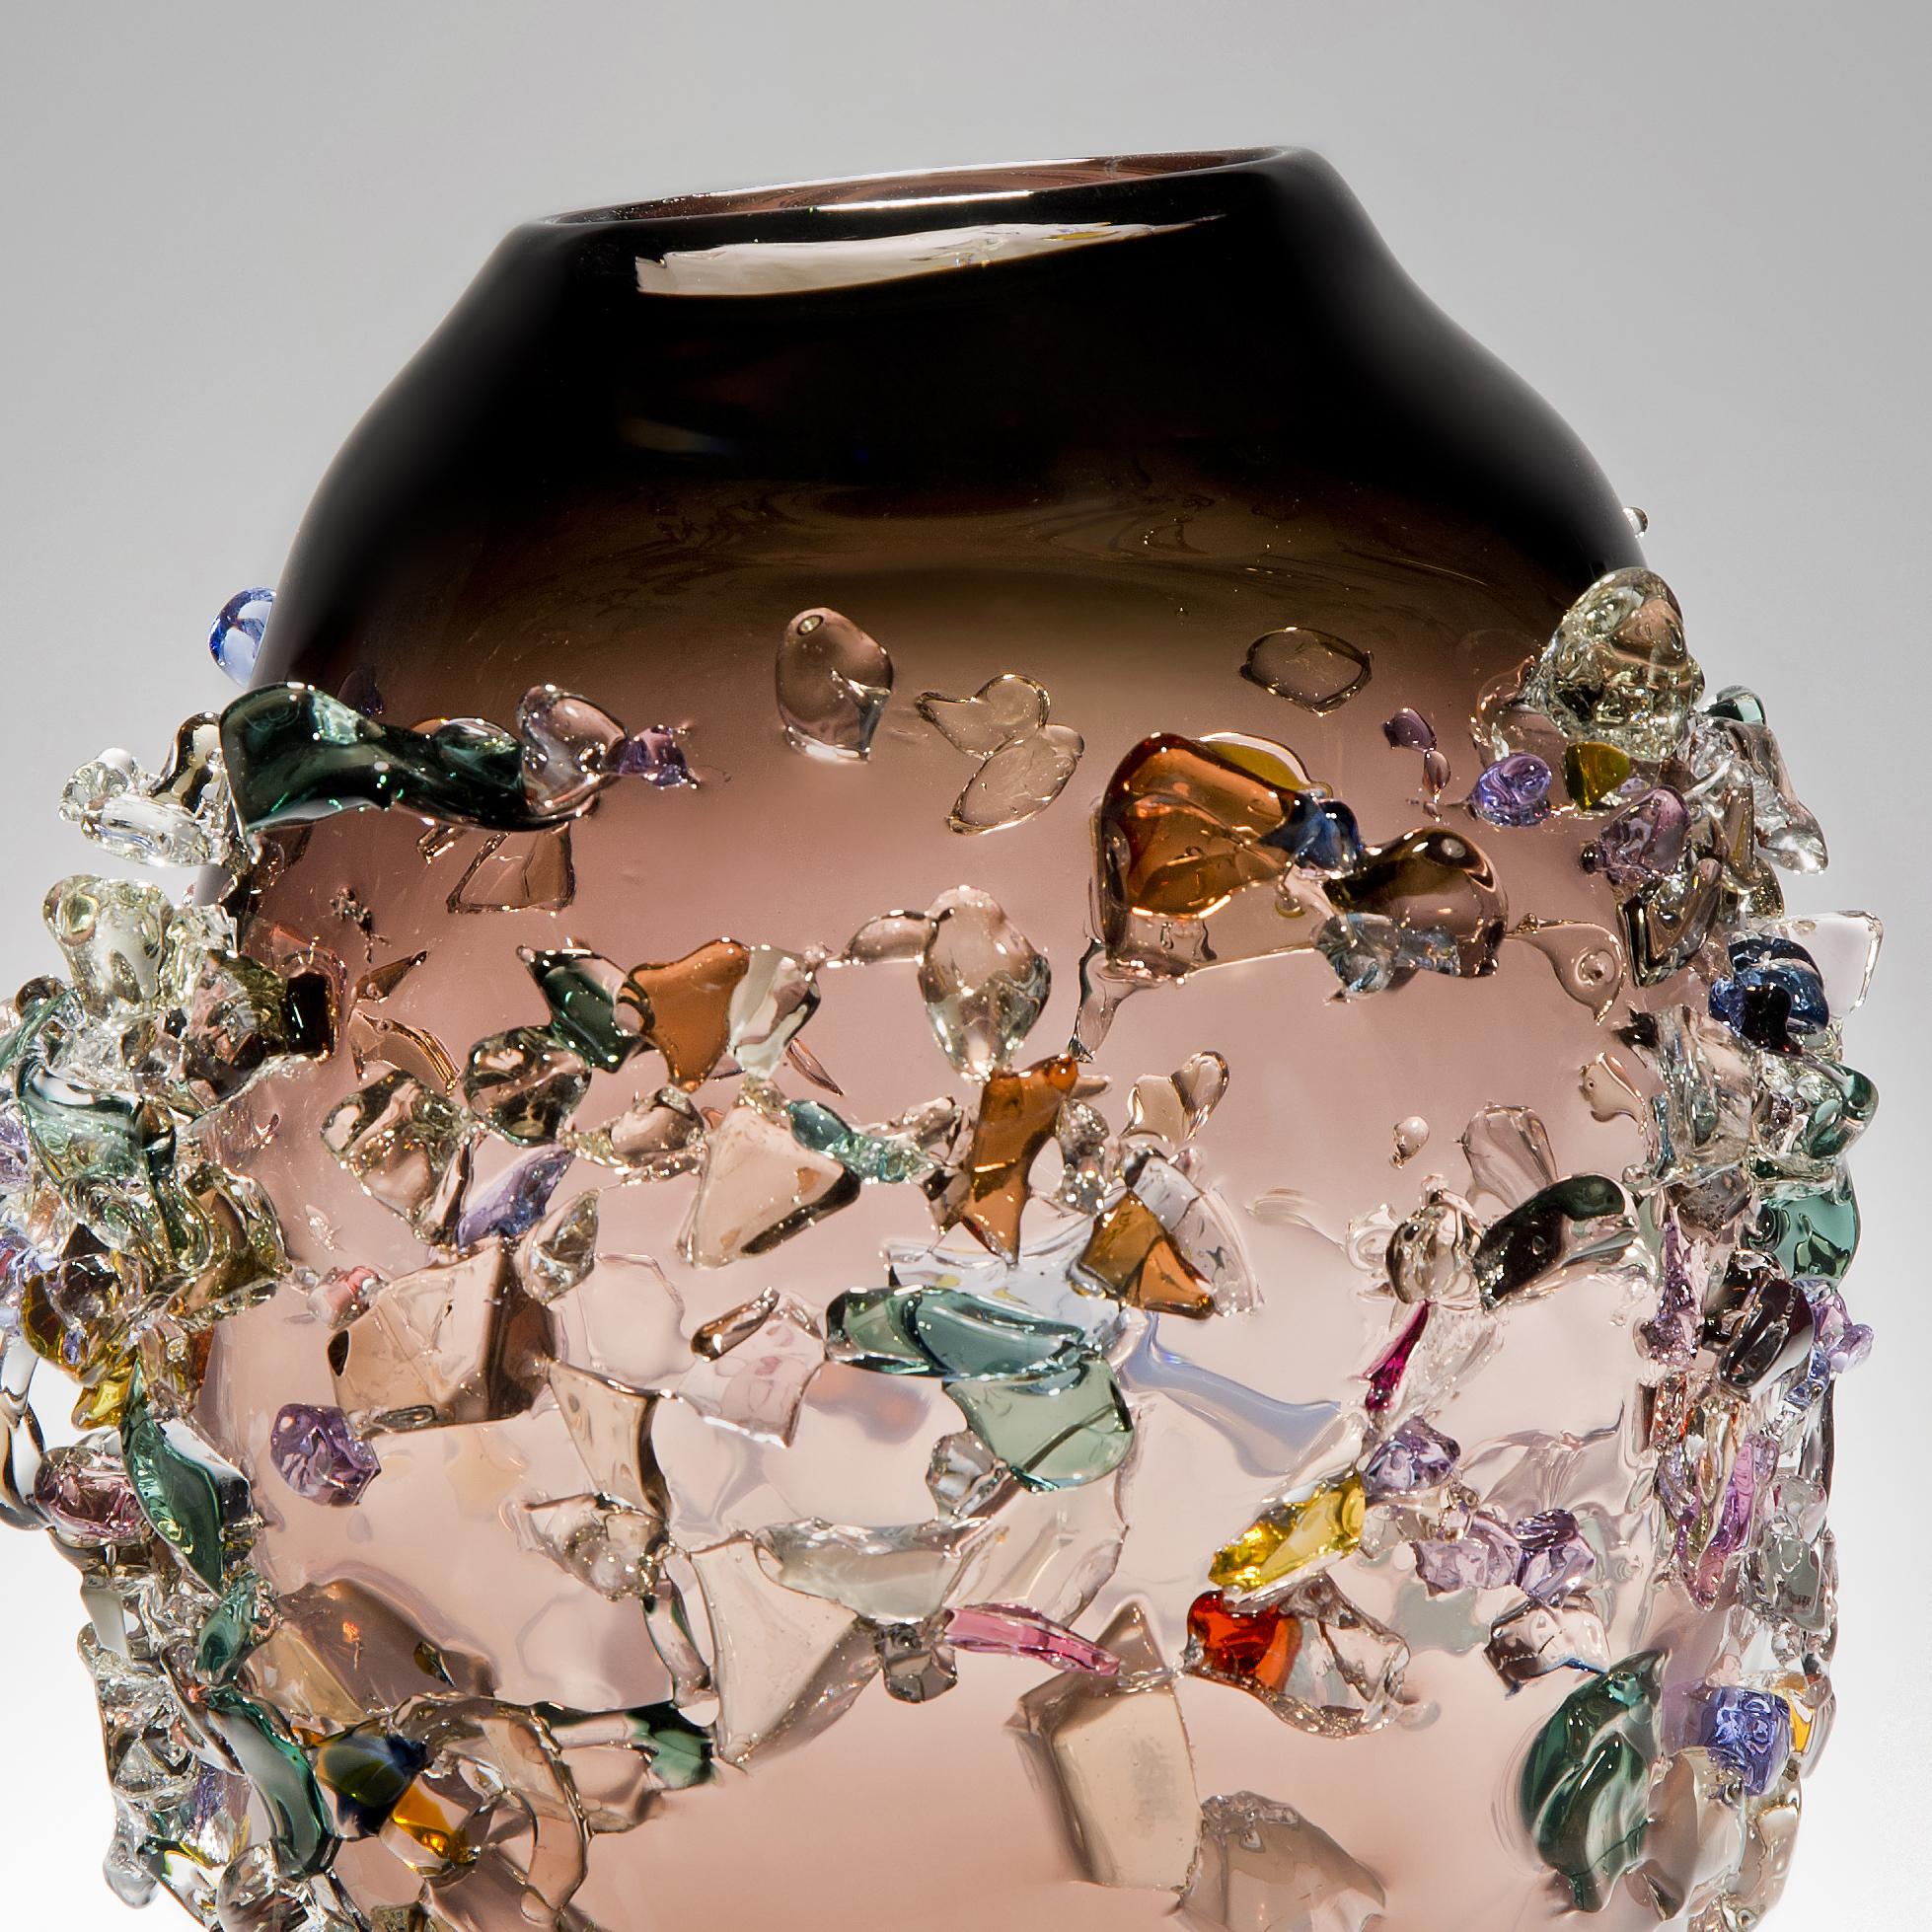 Organic Modern Sakura TRP19013, a Glass Vase in Brown with Mixed Colors by Maarten Vrolijk